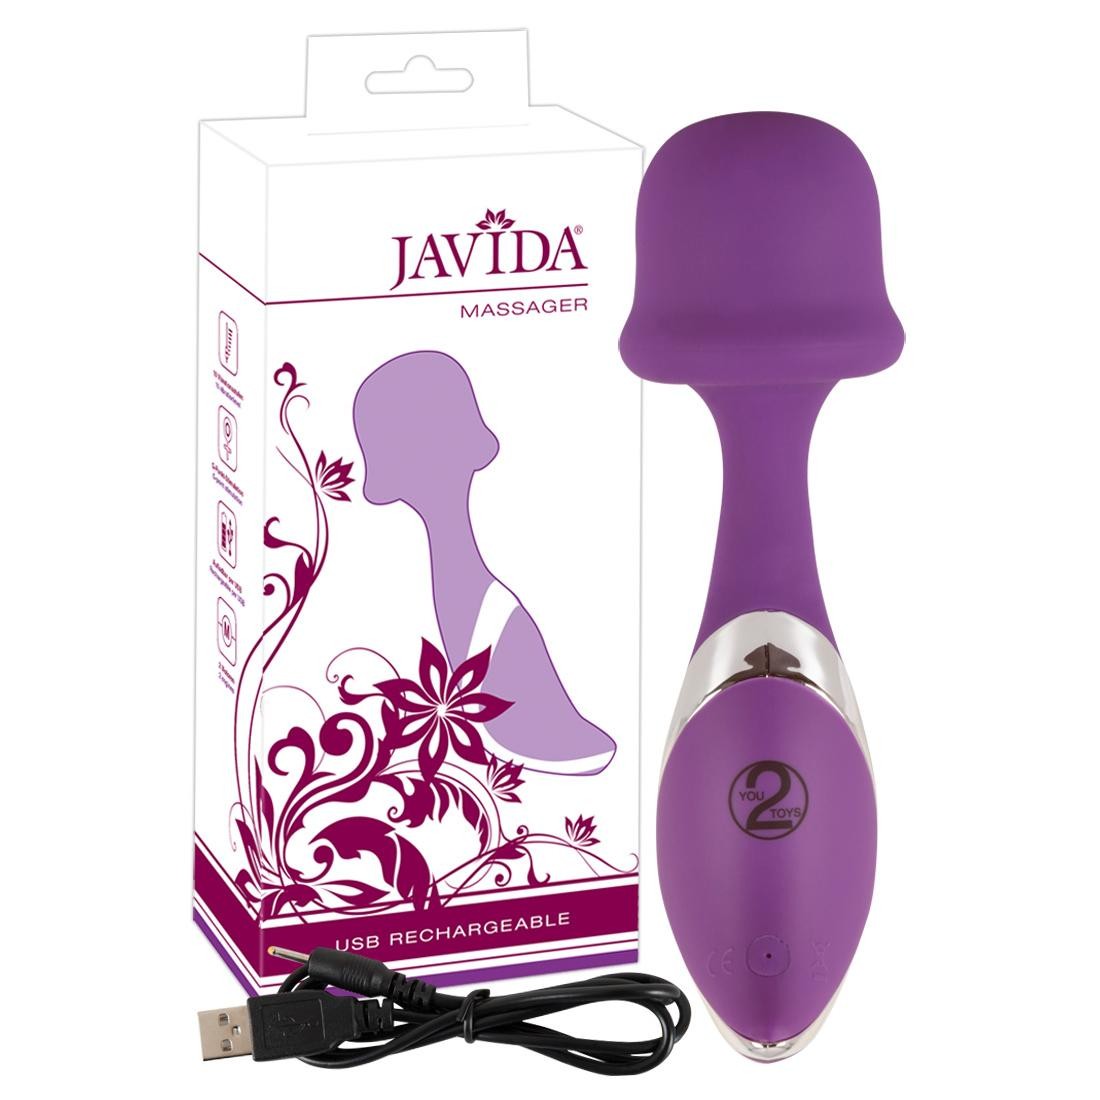  JAVIDA  -  Javida  Massager  -  Vibrator 